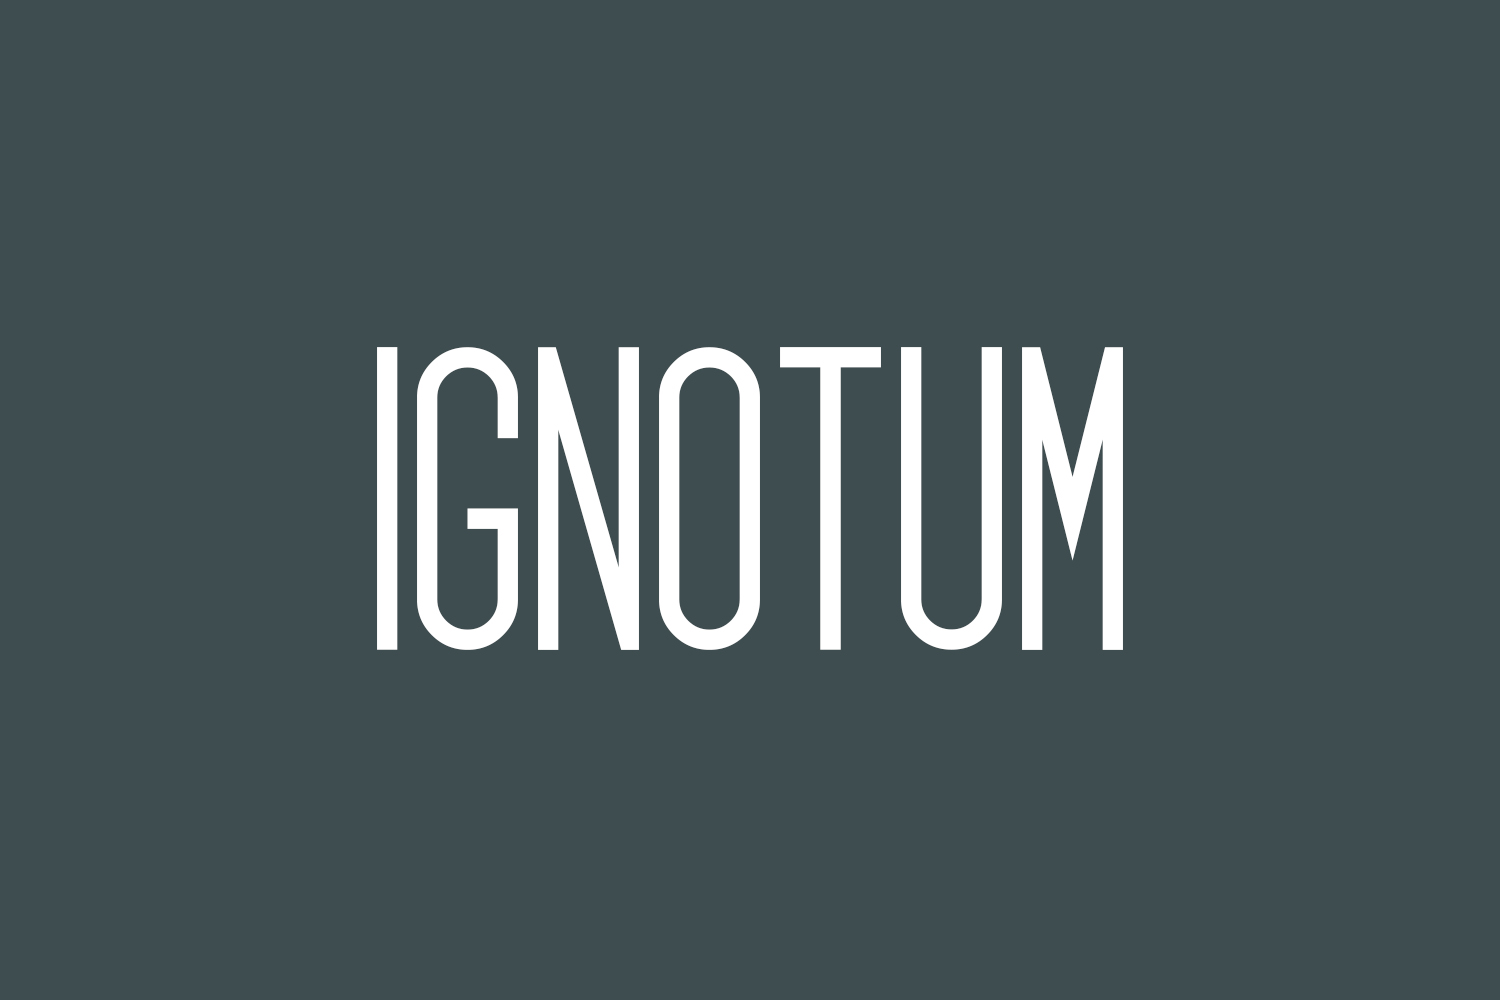 Ignotum Free Font